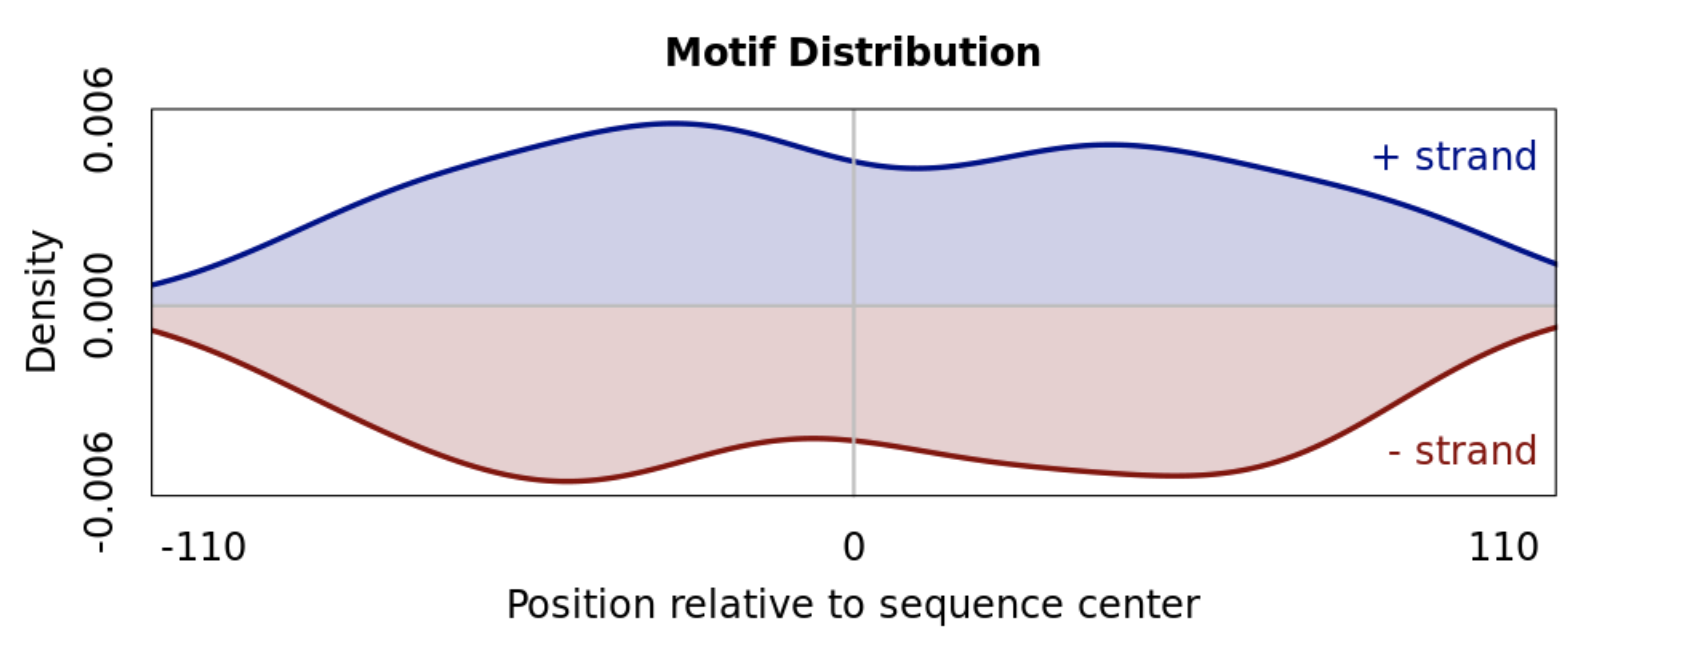 _images/motif_distribution_uniform.png